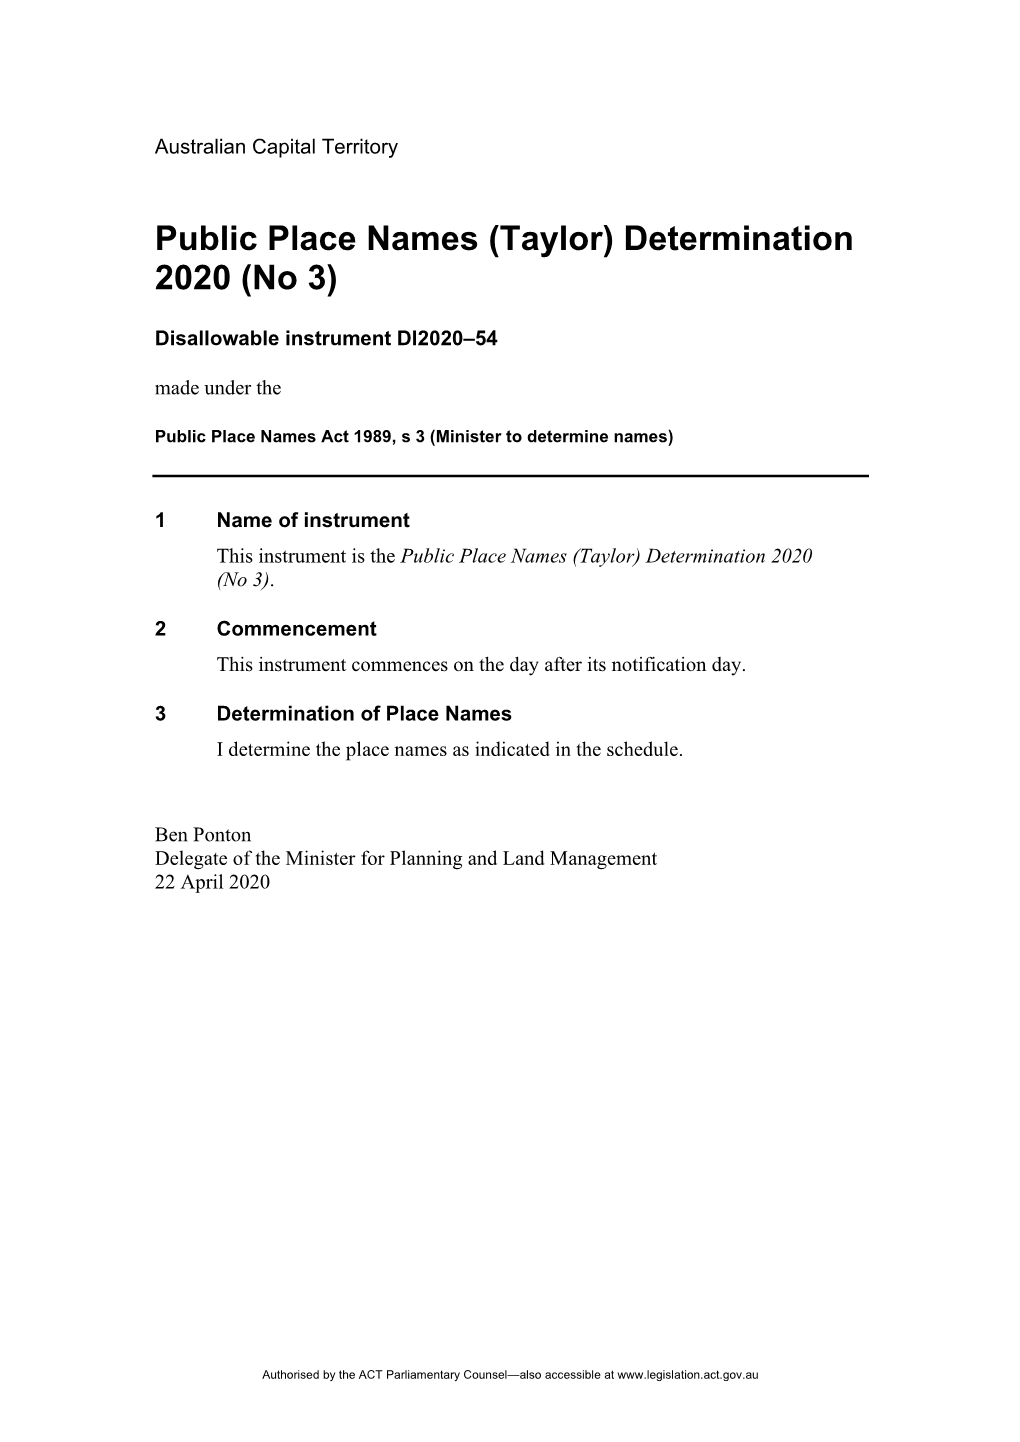 Taylor) Determination 2020 (No 3